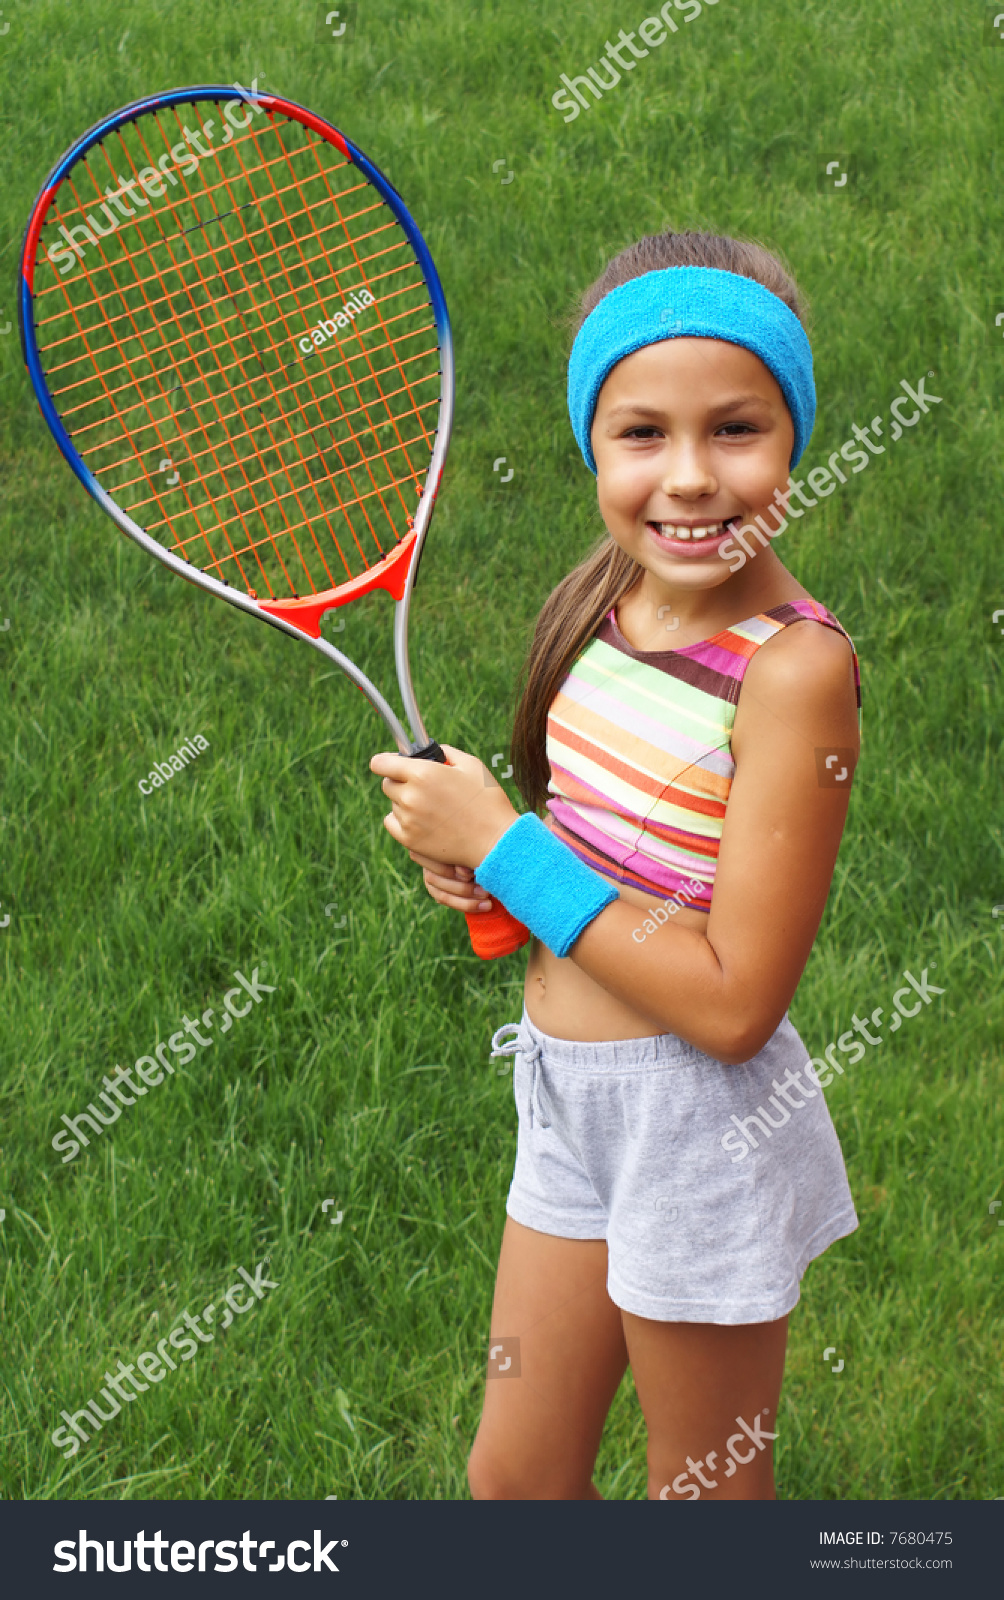 Preteen Girl Playing Tennis Outdoors On Green Grass 